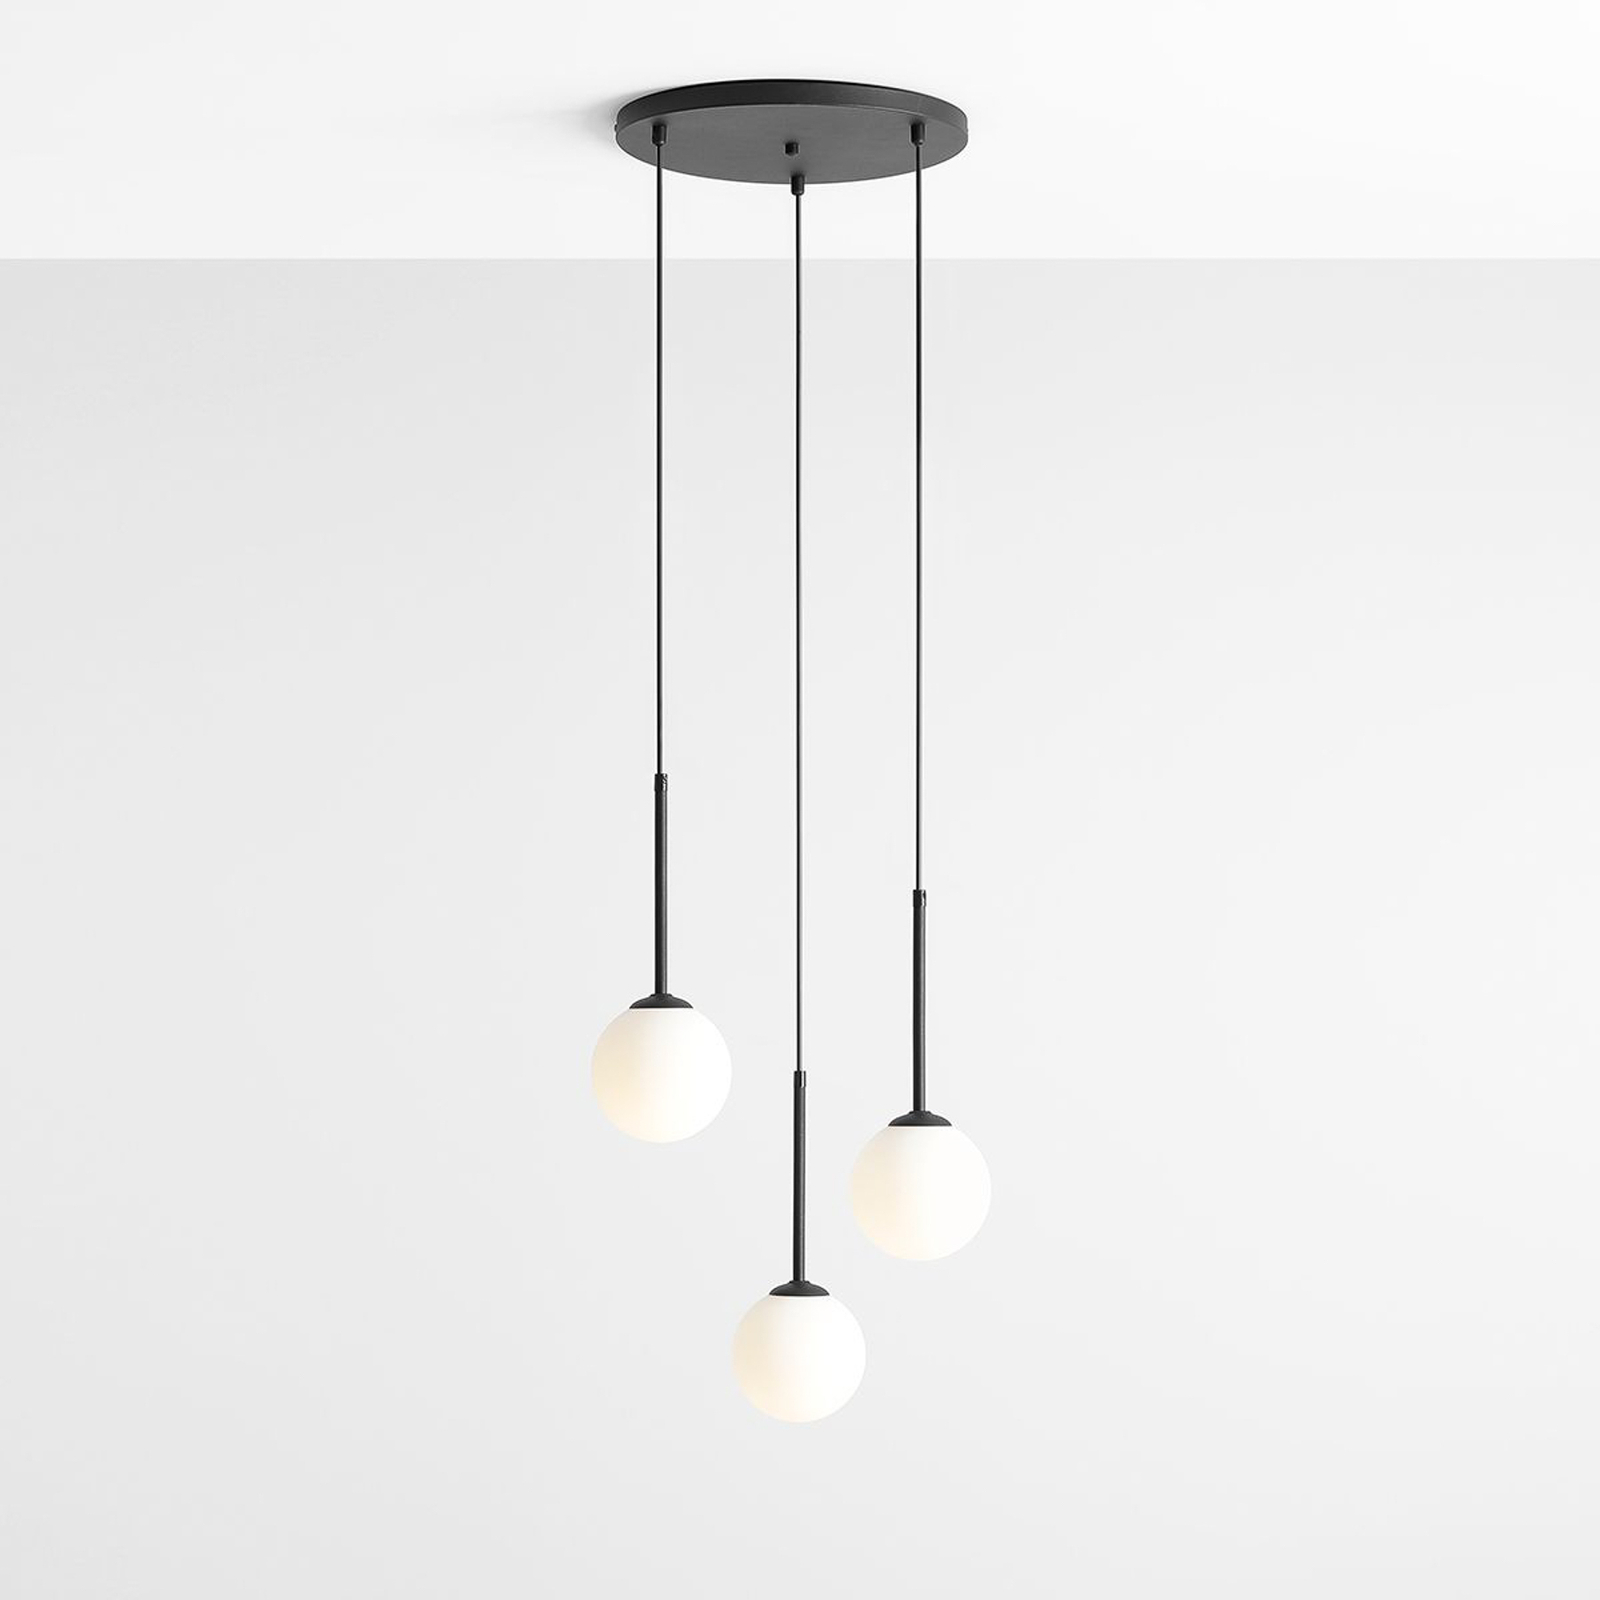 Hanglamp Joel, zwart/wit, Rondel, 3-lamps